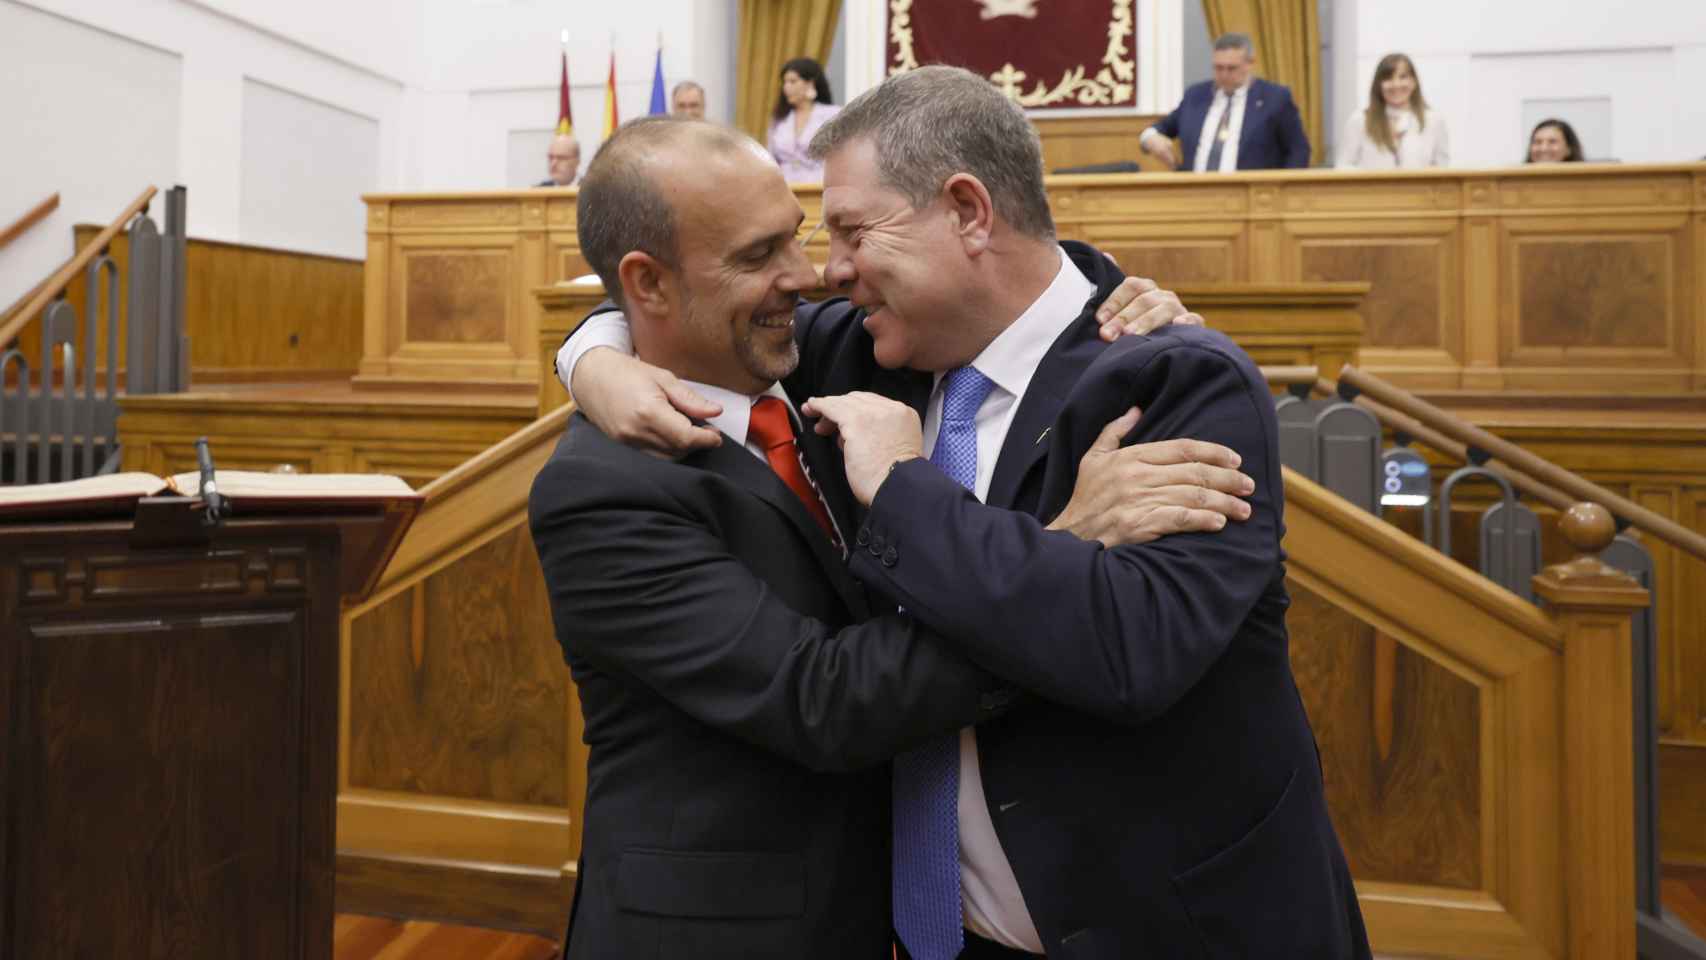 Pablo Bellido (izquierda) y Emiliano García-Page (derecha), abrazados en las Cortes de Castilla-La Mancha.